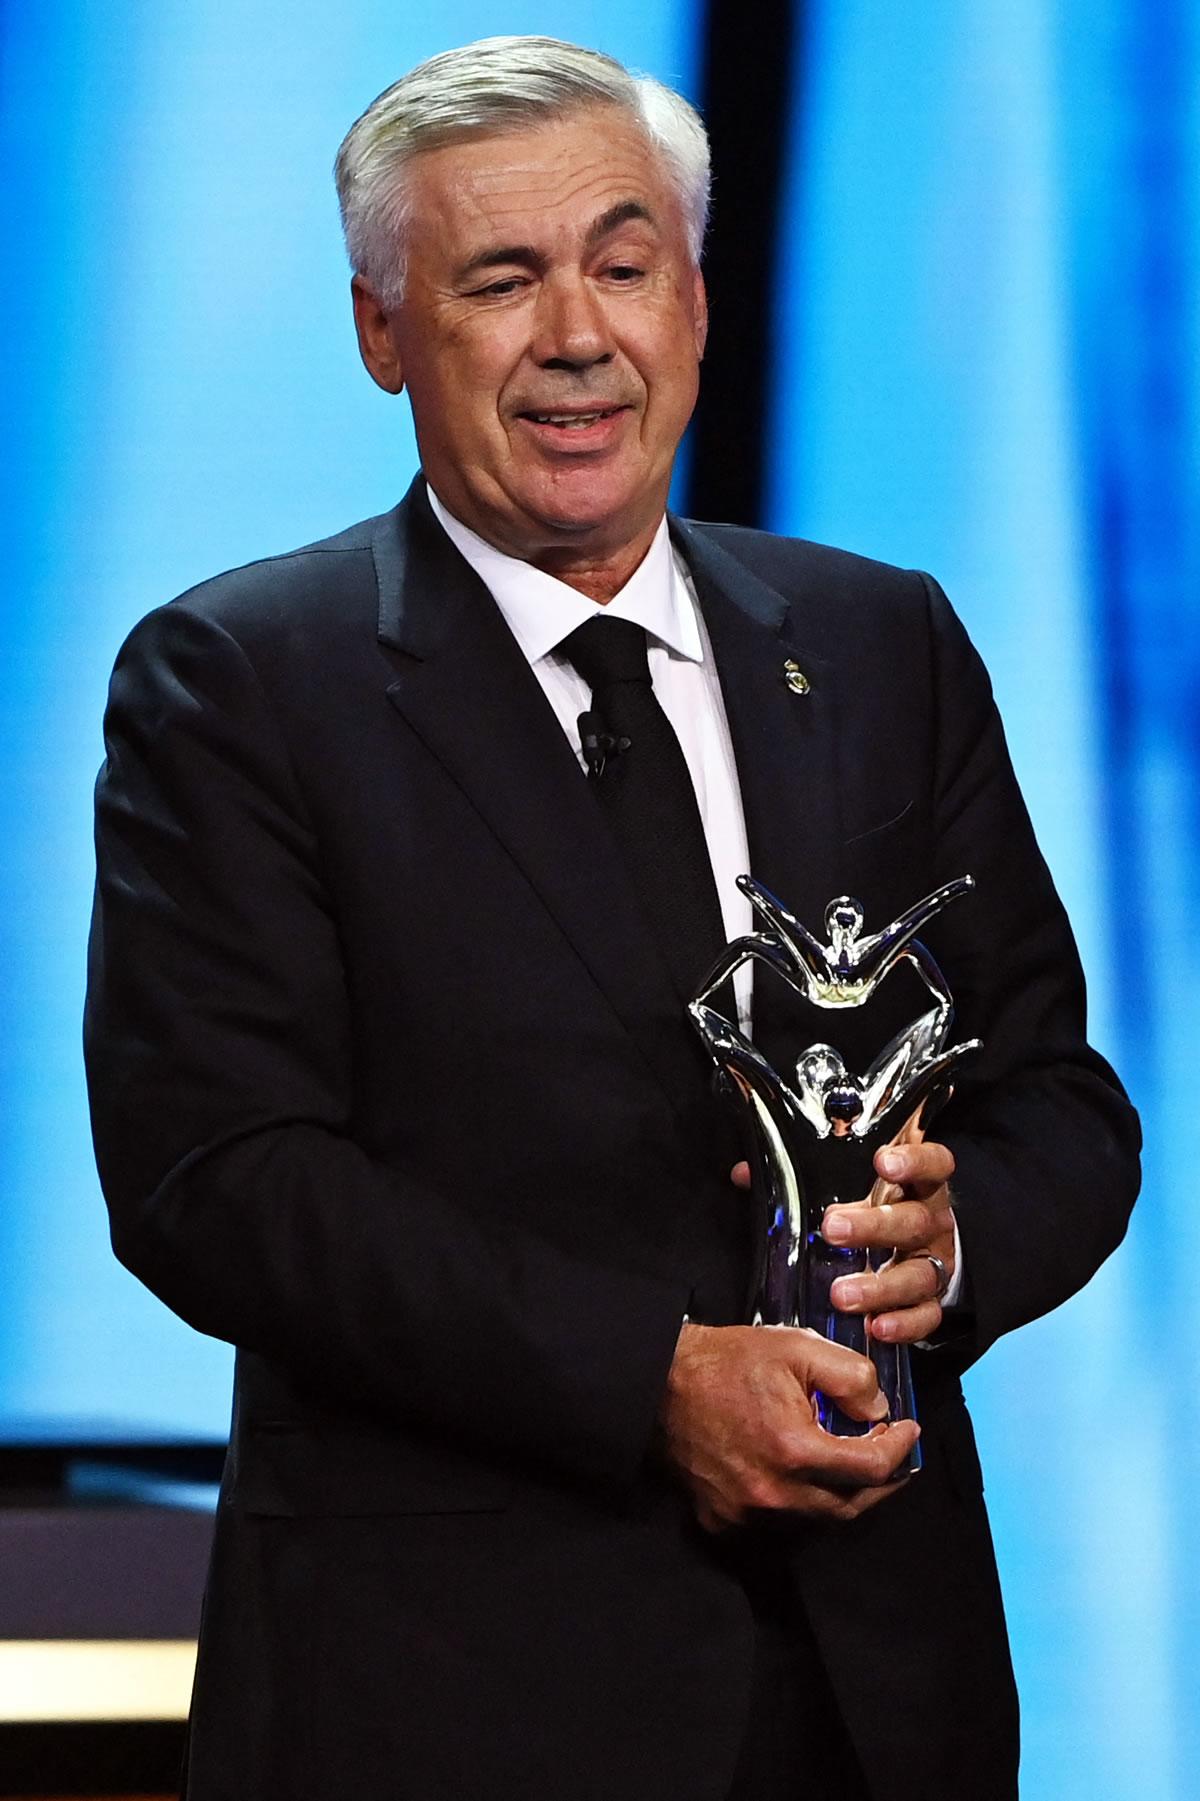 Ancelotti, elegido ‘Entrenador del año de la UEFA’